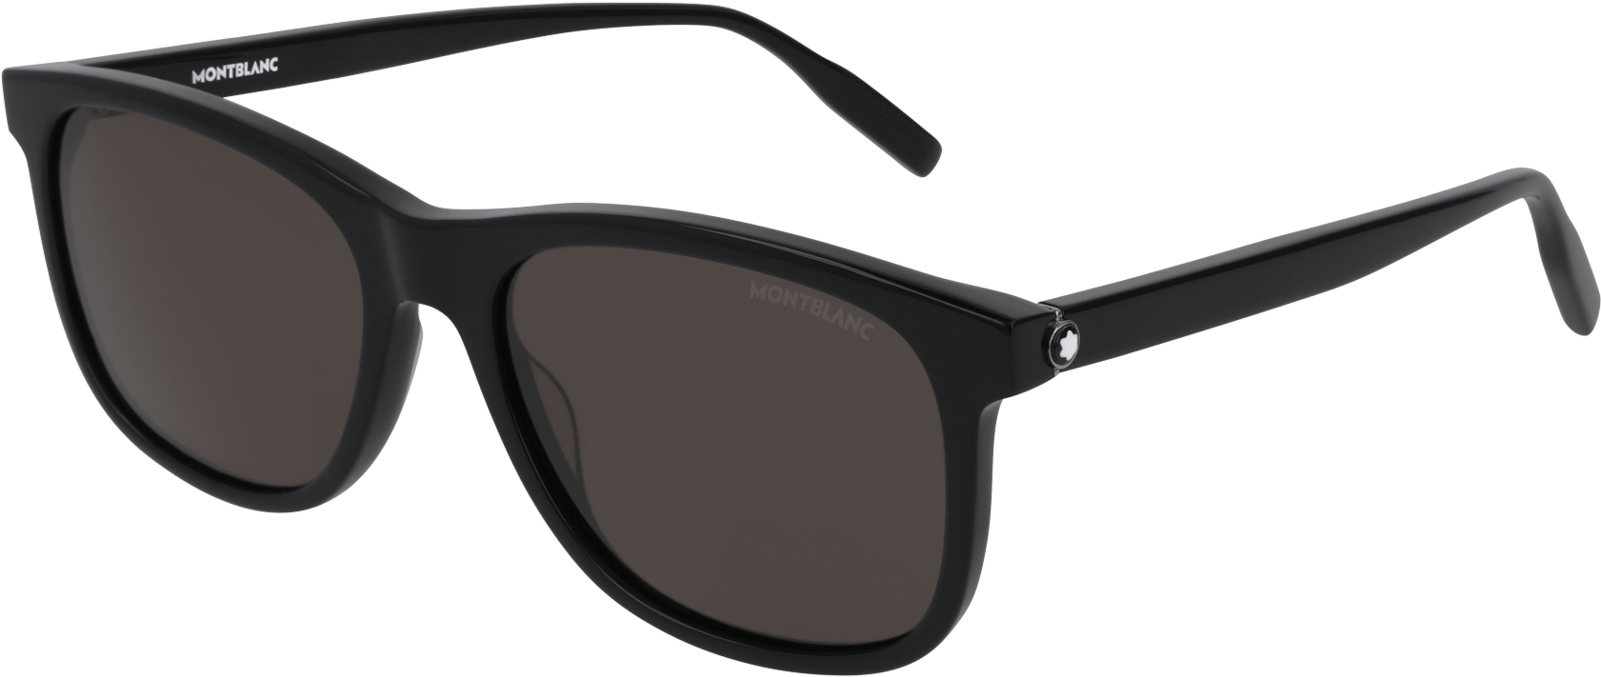 255102 Ecom Retina 01 - Black Gucci Sunglasses Mens (1600x1600), Png Download